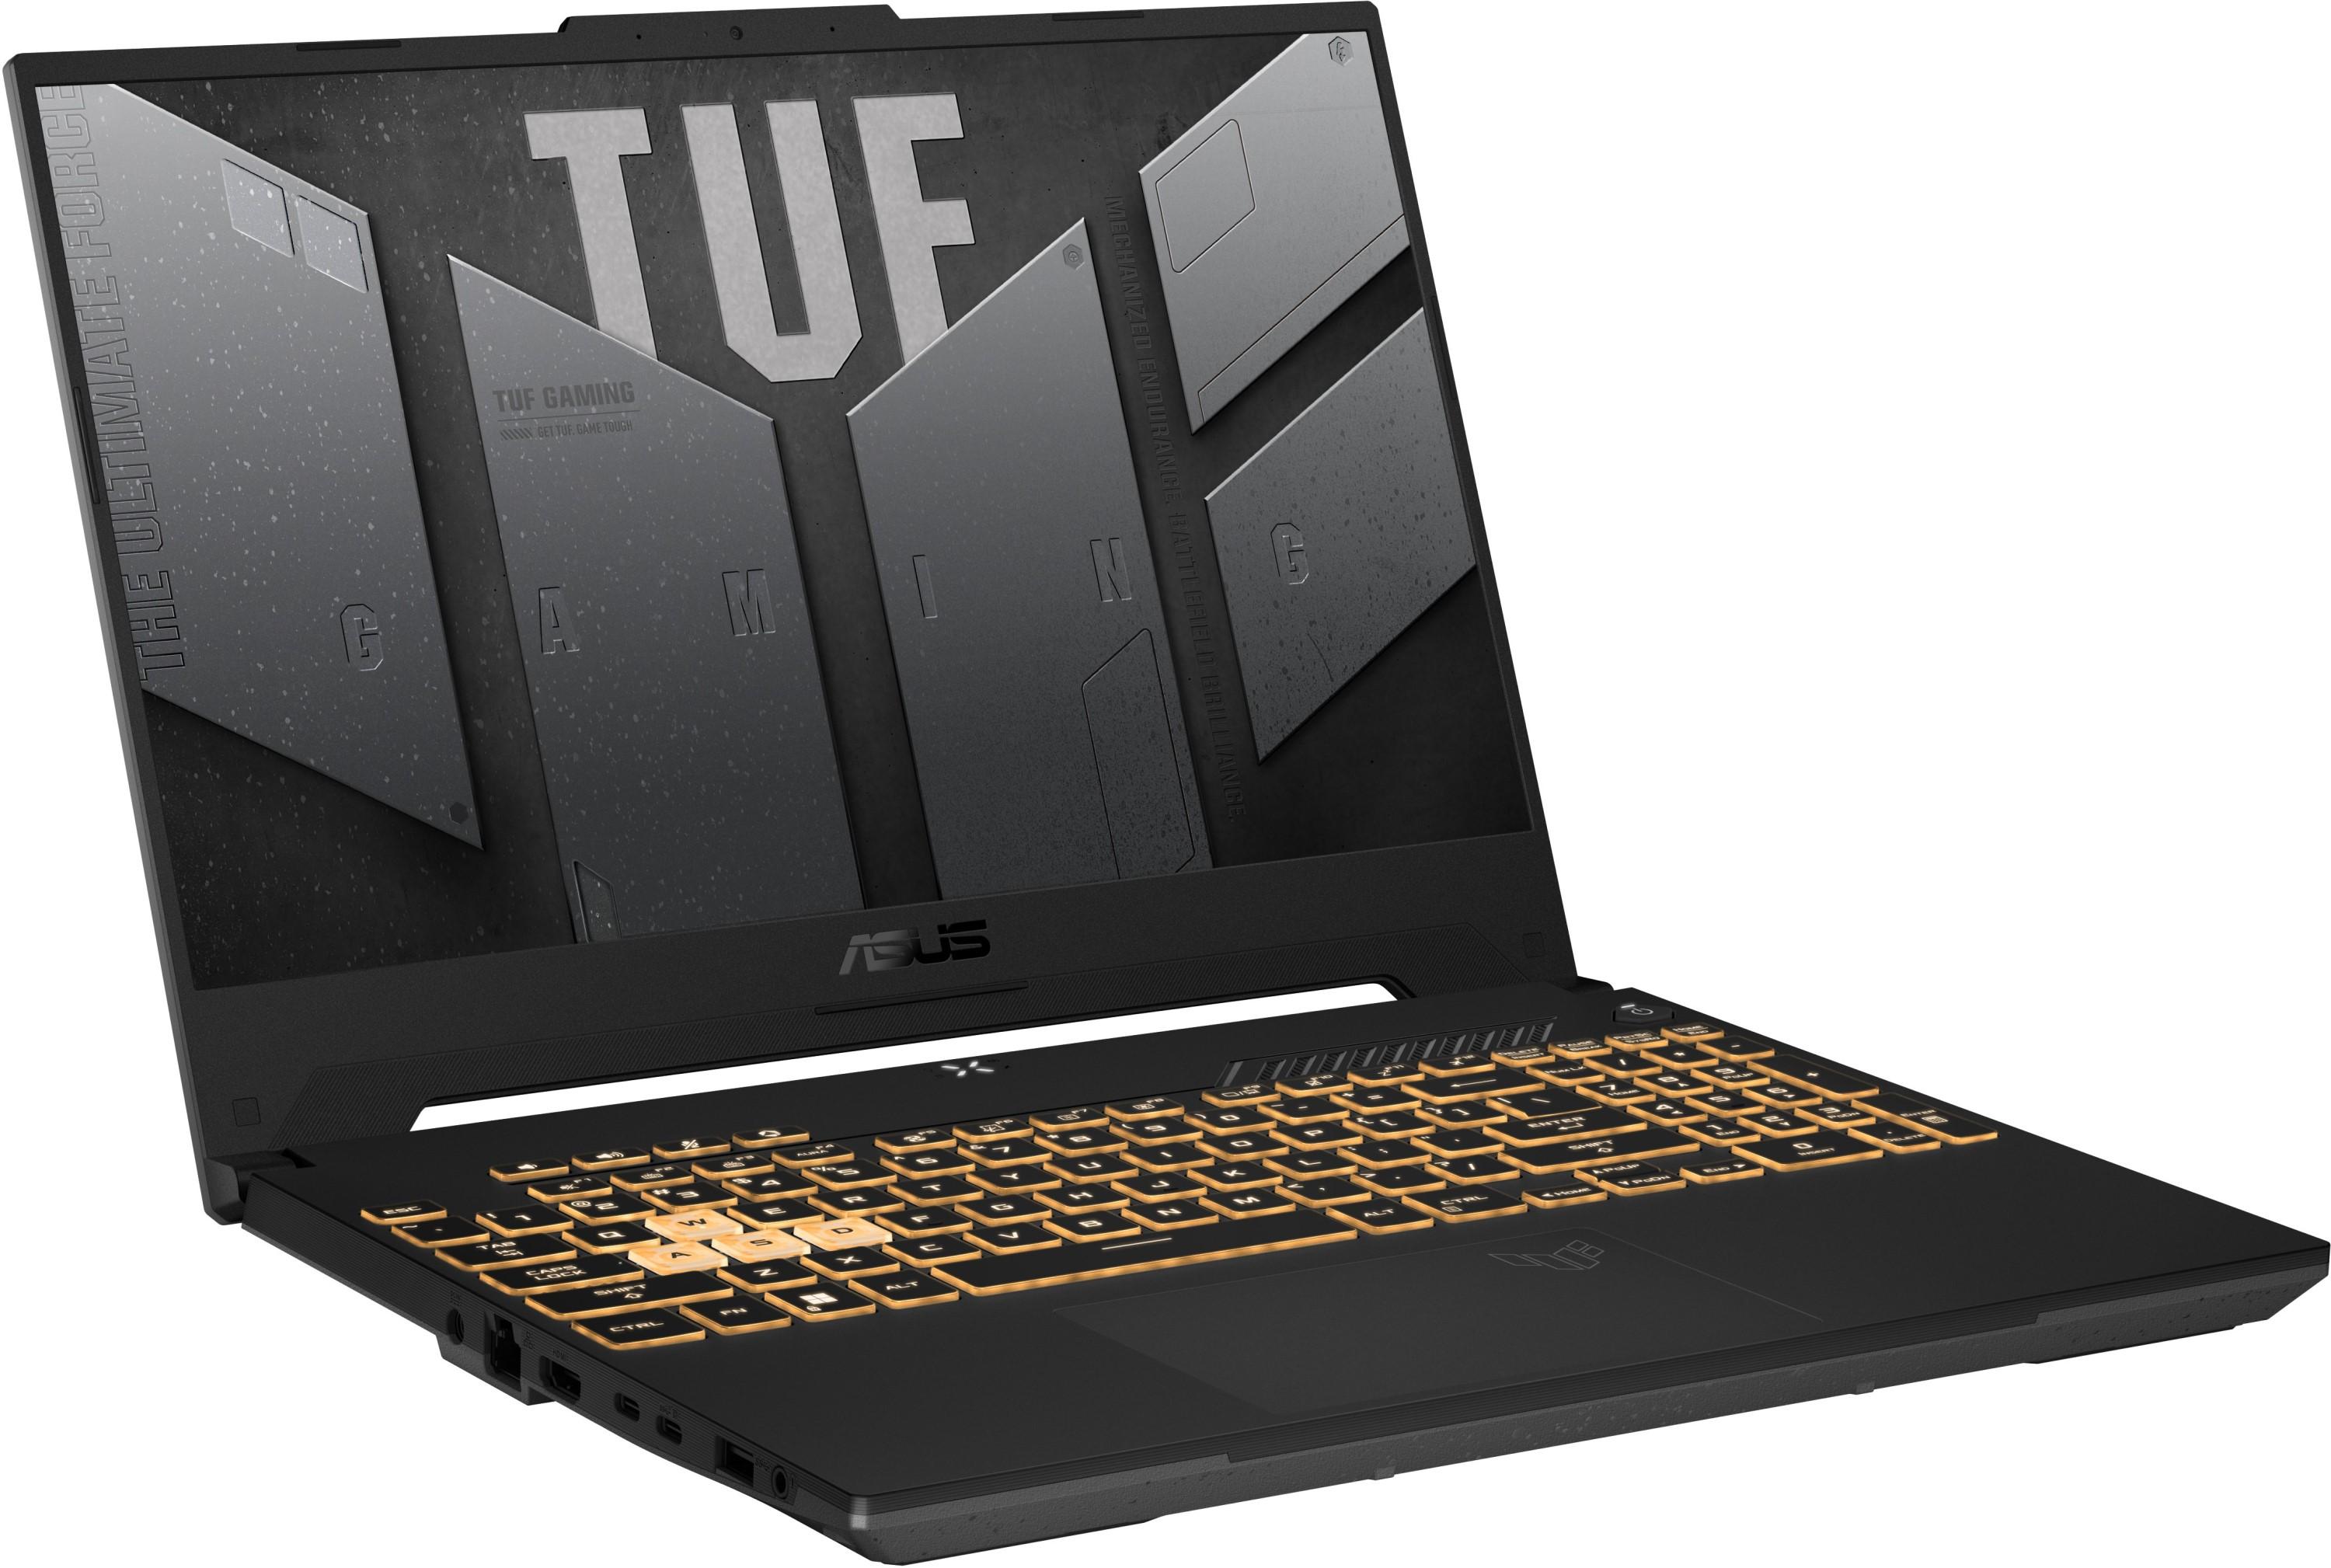 Лаптоп ASUS TUF F15 FX707ZC4-HX009 Intel Core i7-12700H, 15.6 FHD IPS 144Hz, 2x8GB DDR4, 512GB SSD, nVIdia RTX 3050 4GB GDDR6, WiFi 6-4